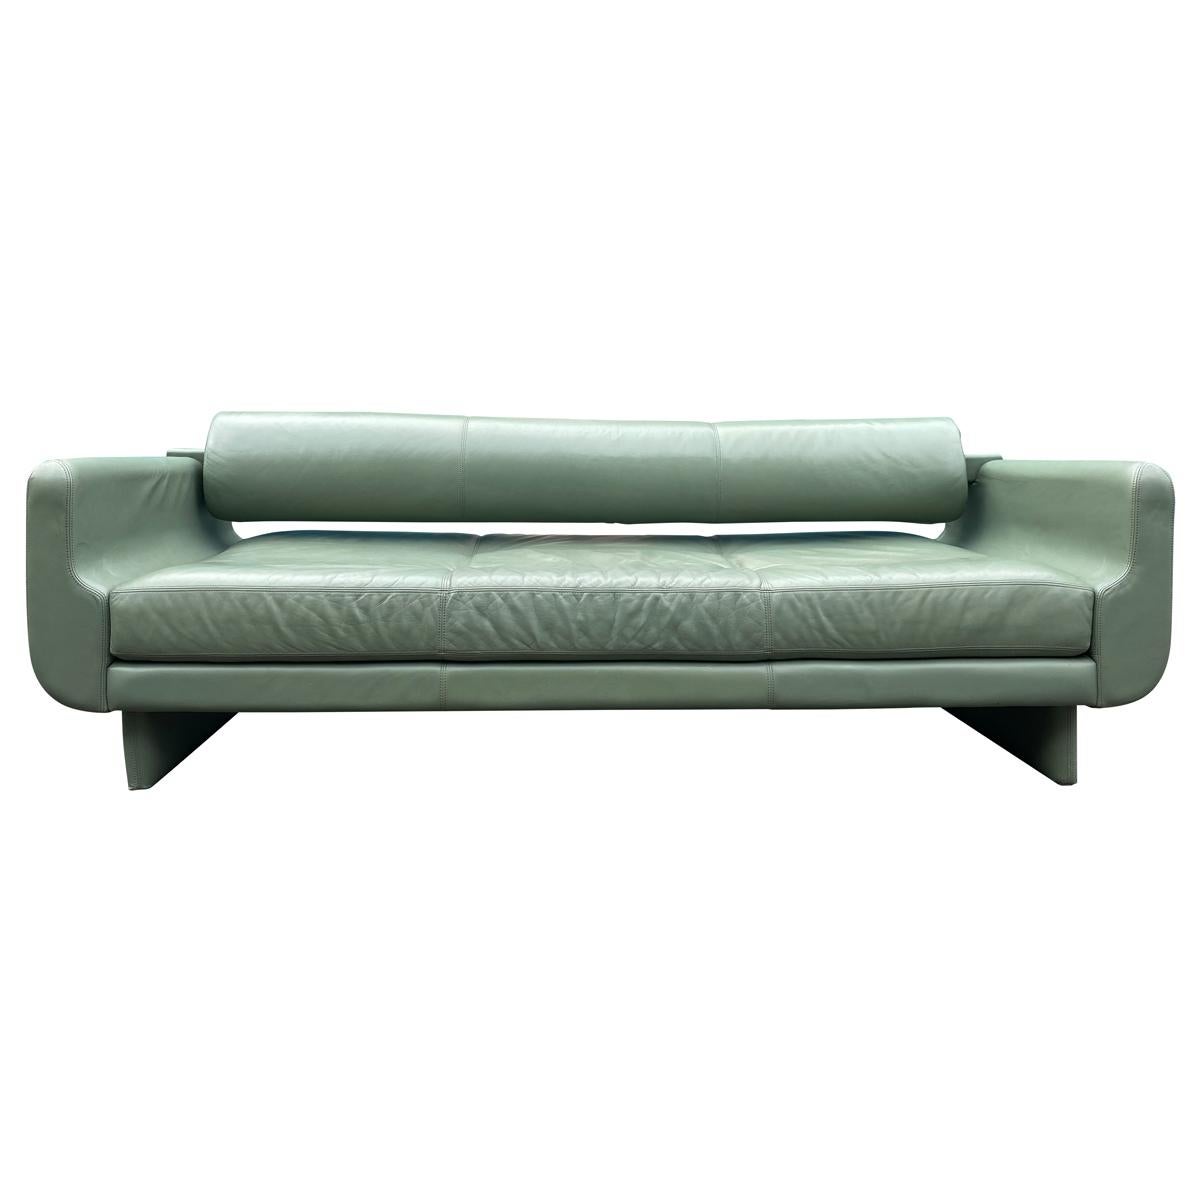 Schönes Leder Matinee Daybed Sofa von Vladimir Kagan Salbei Grünes Leder